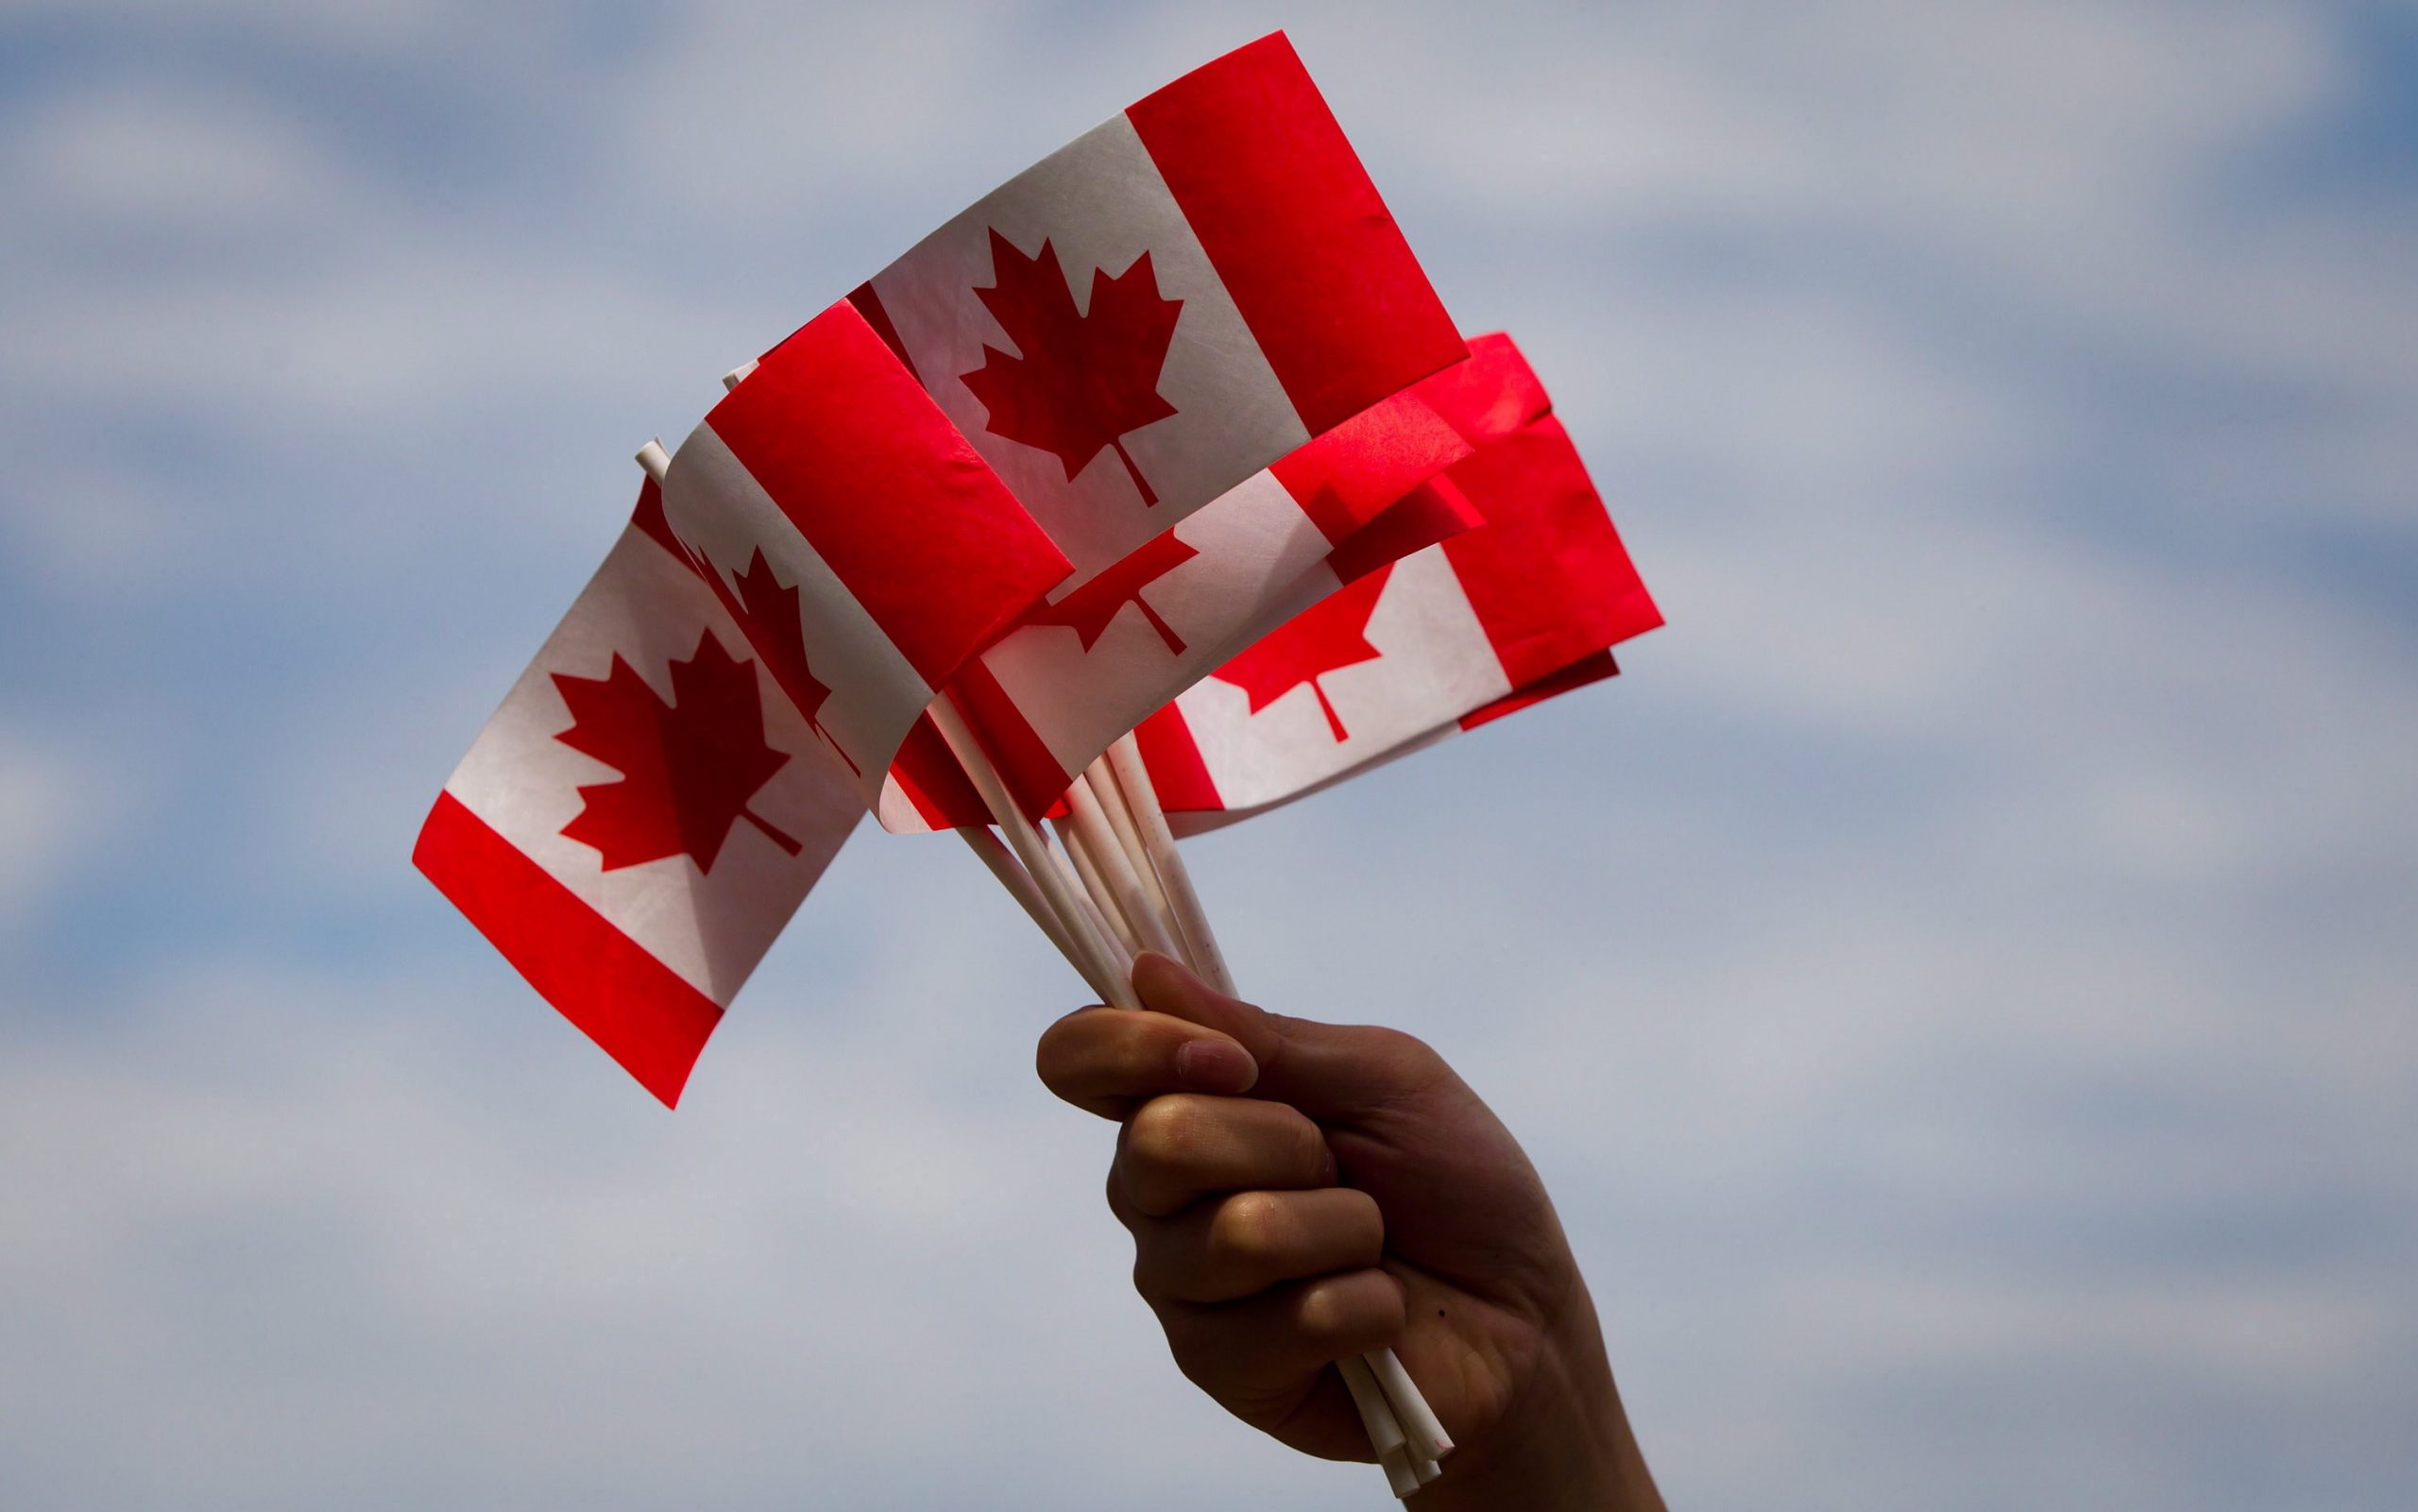 Happy Canada day 2020 videos